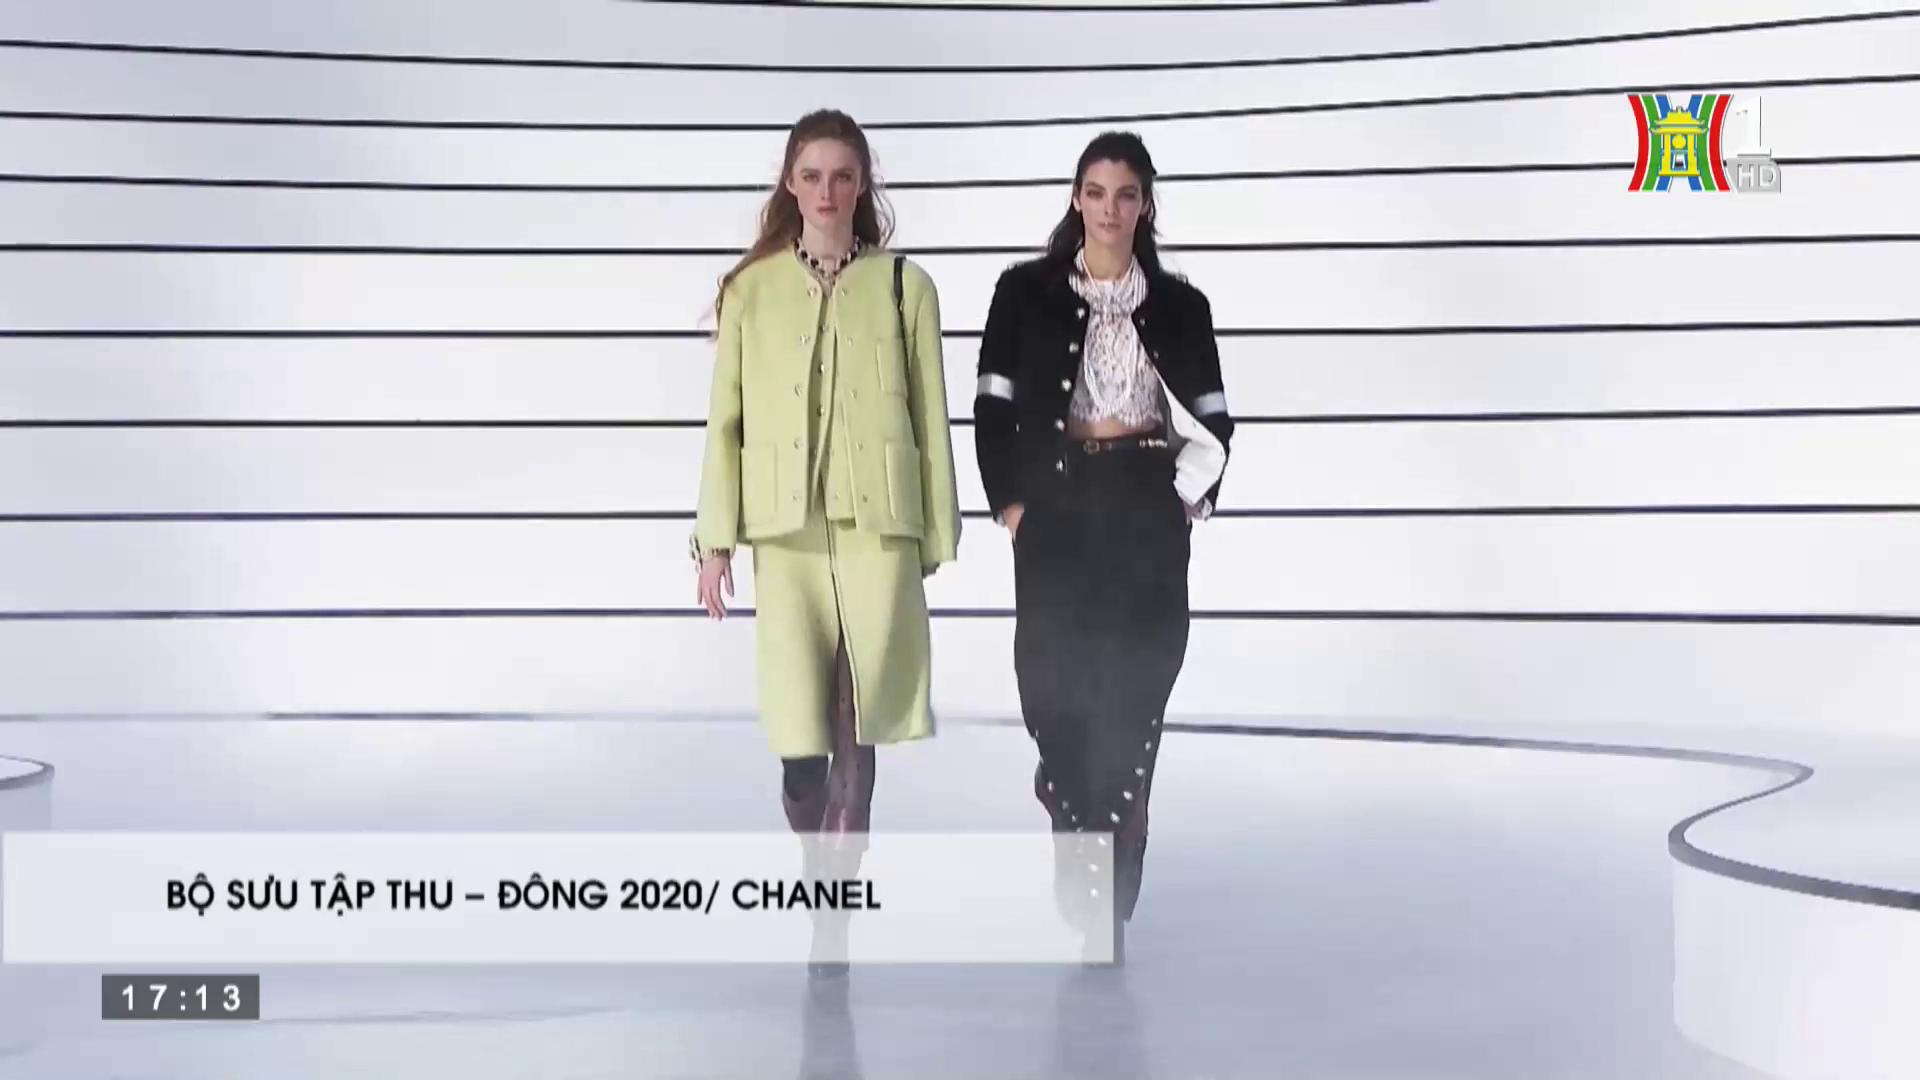 Đẹp và phong cách: BST Thu đông 2020 - Chanel